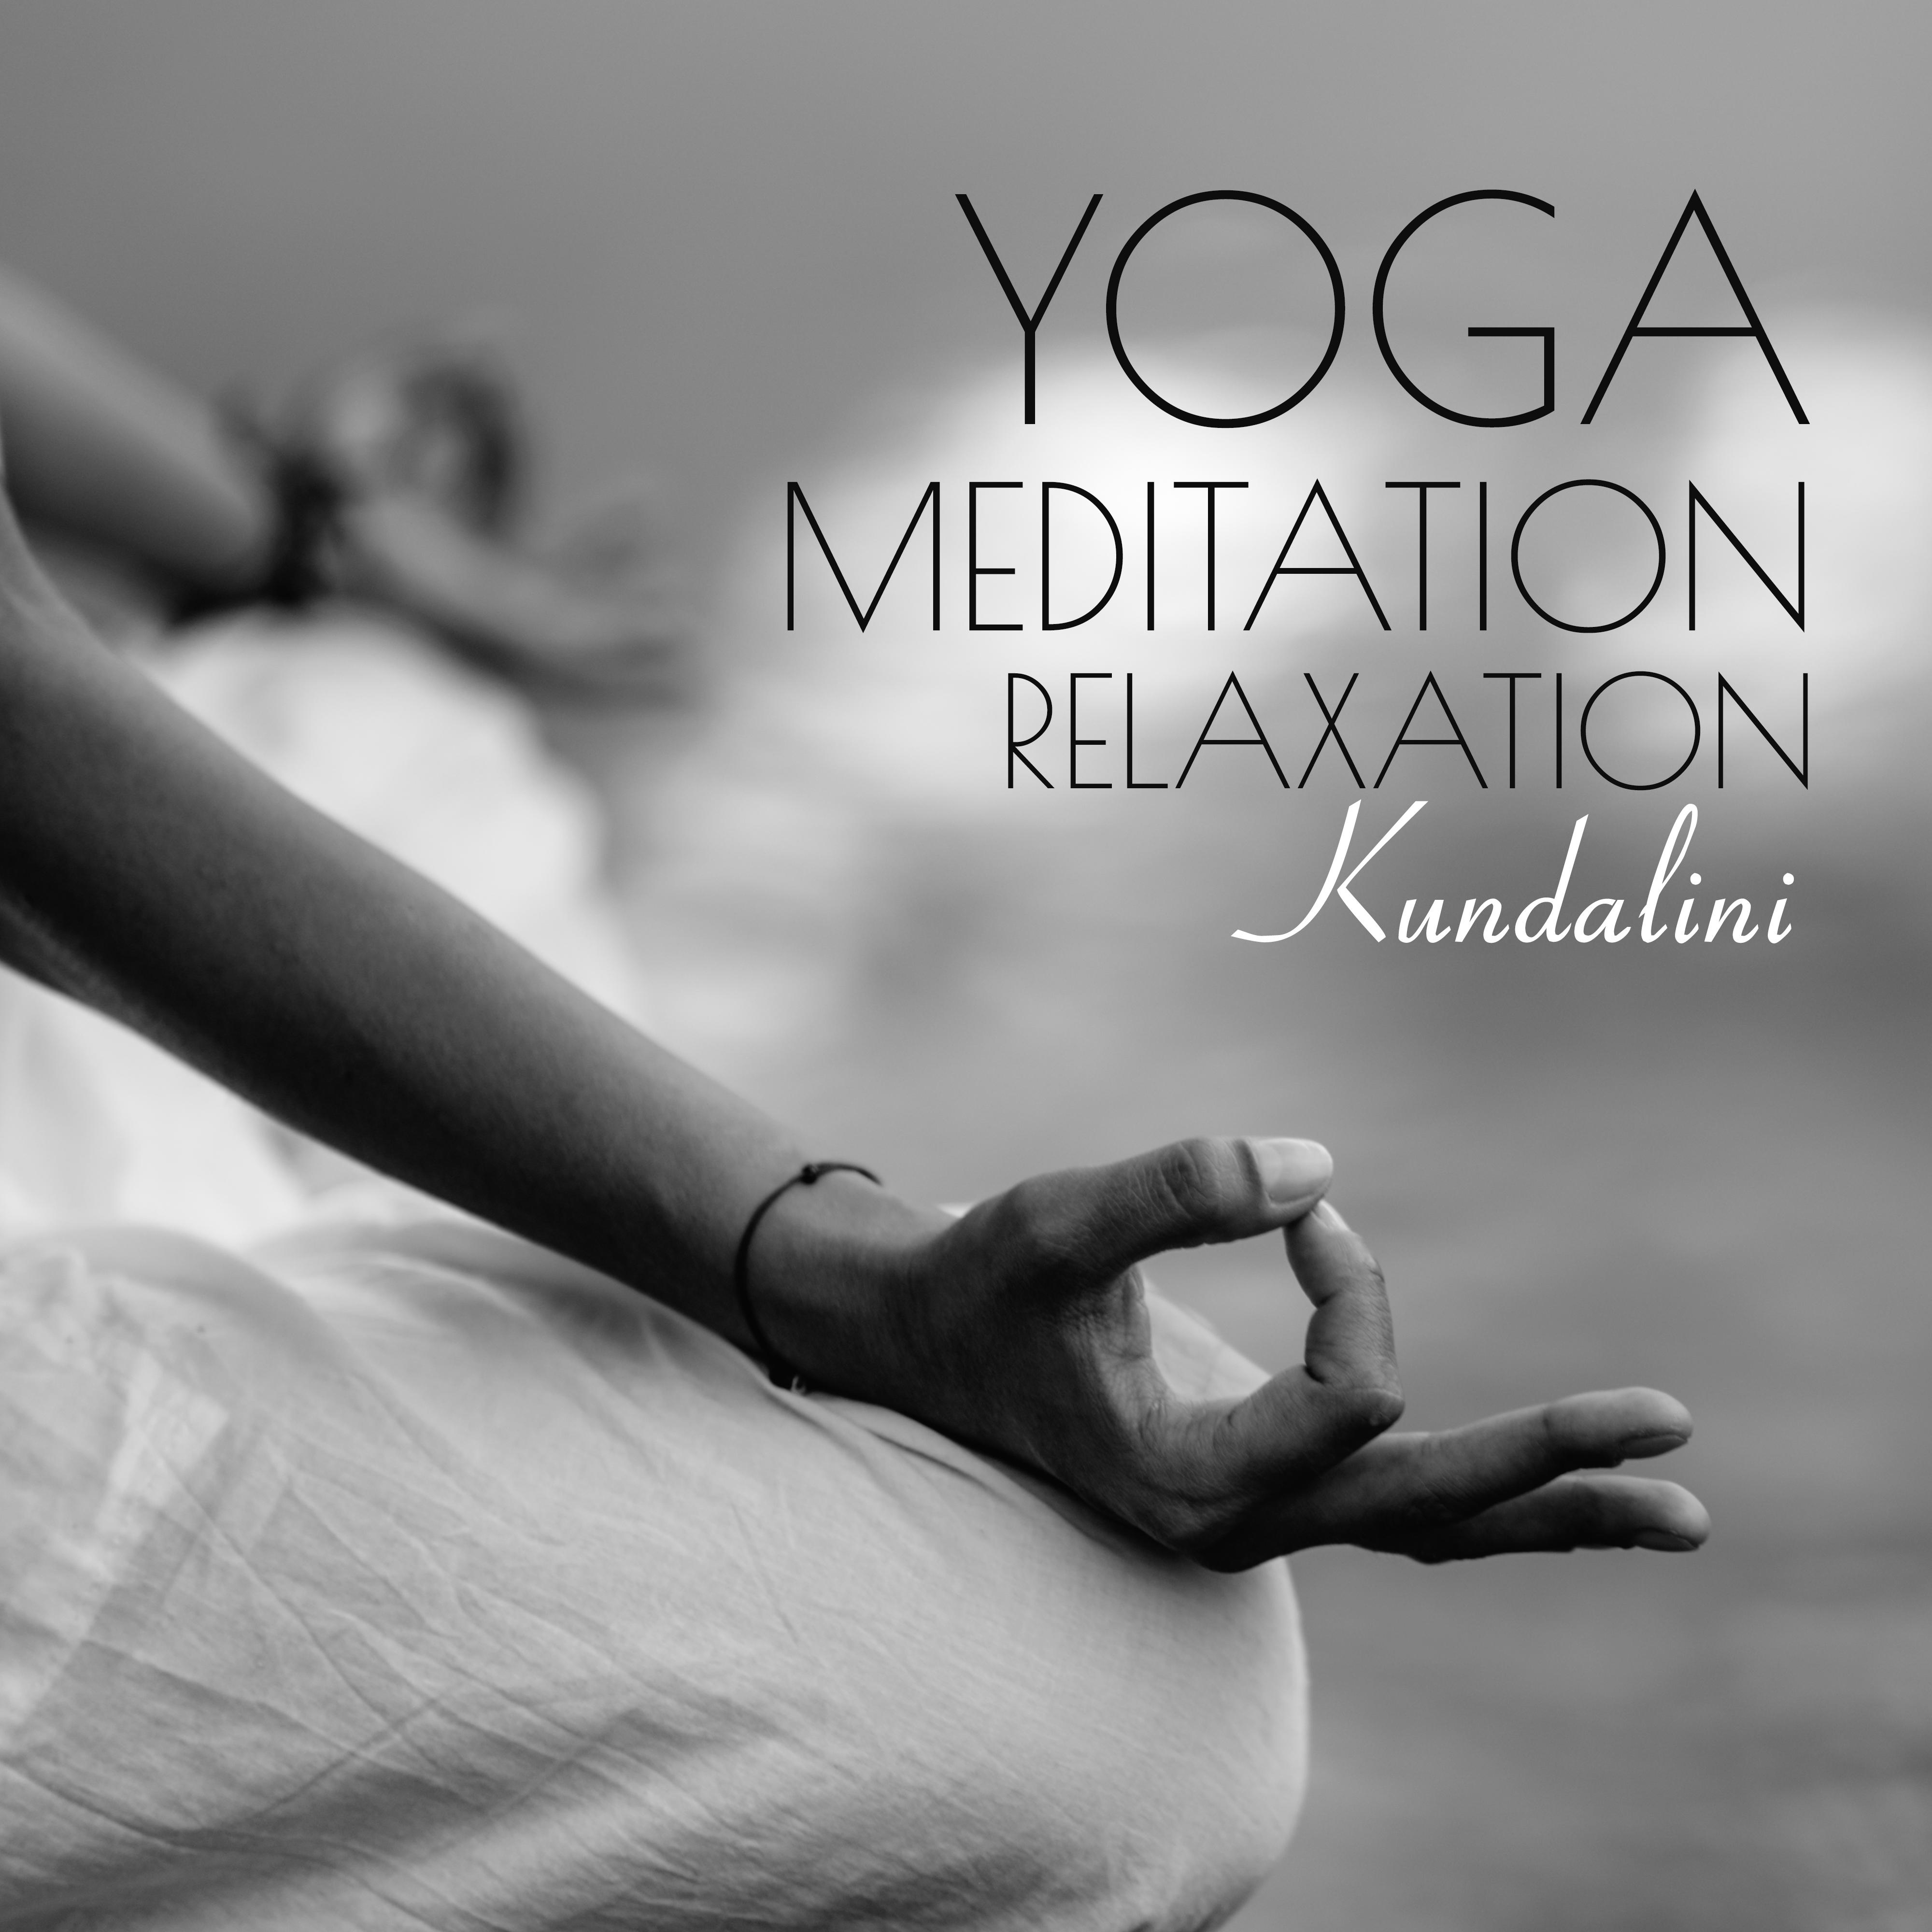 Yoga, Meditation, Relaxation: Kundalini